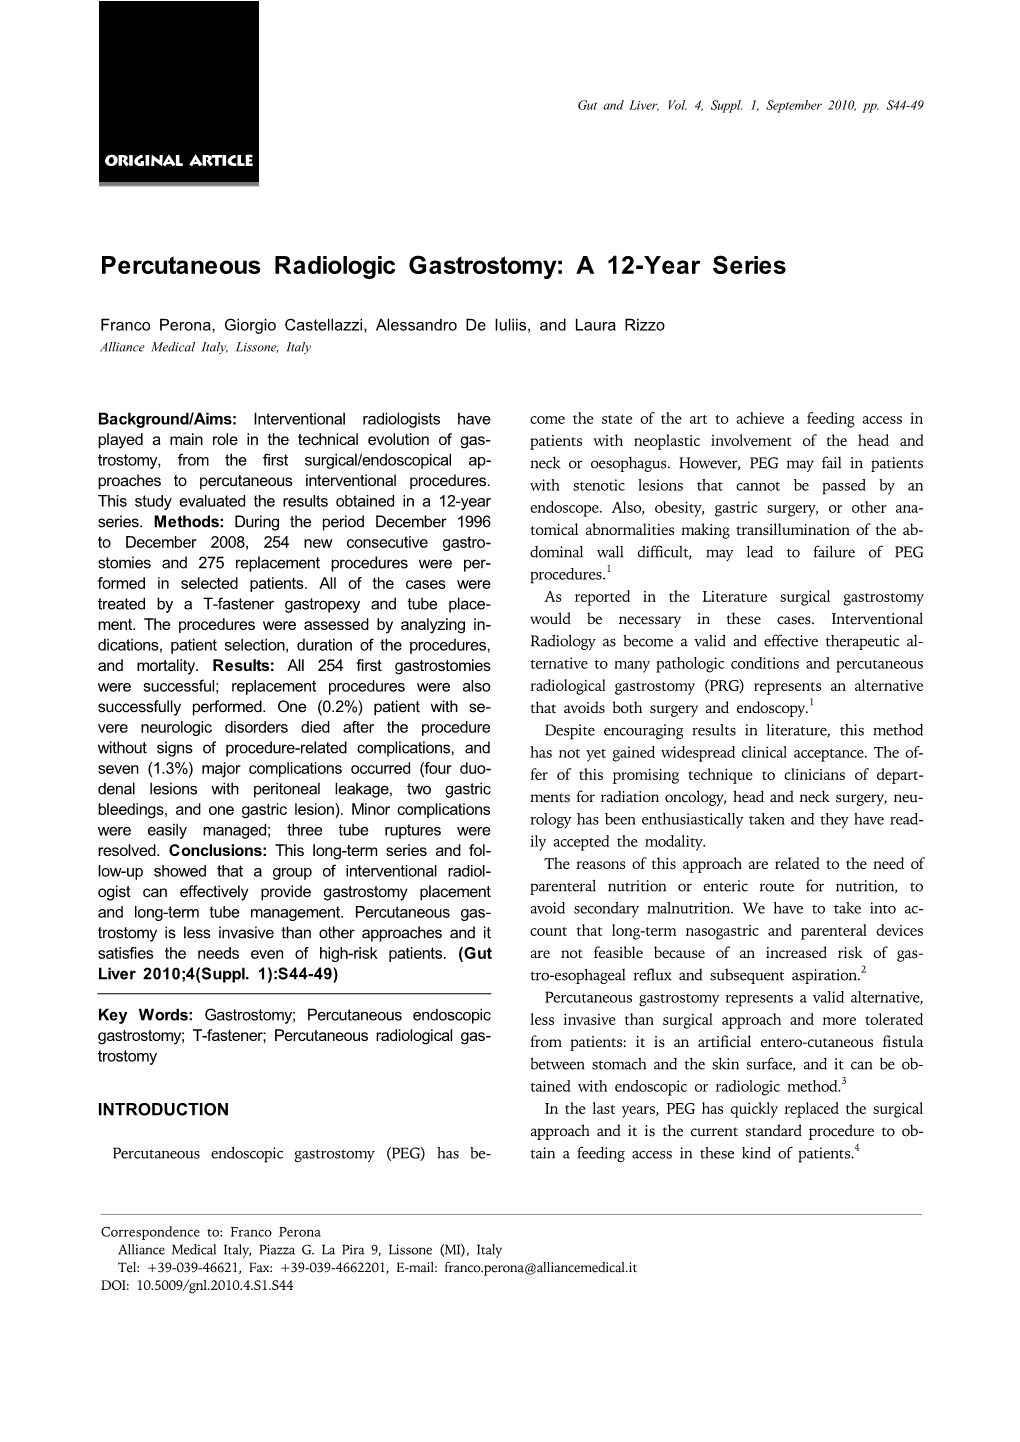 Percutaneous Radiologic Gastrostomy: a 12-Year Series